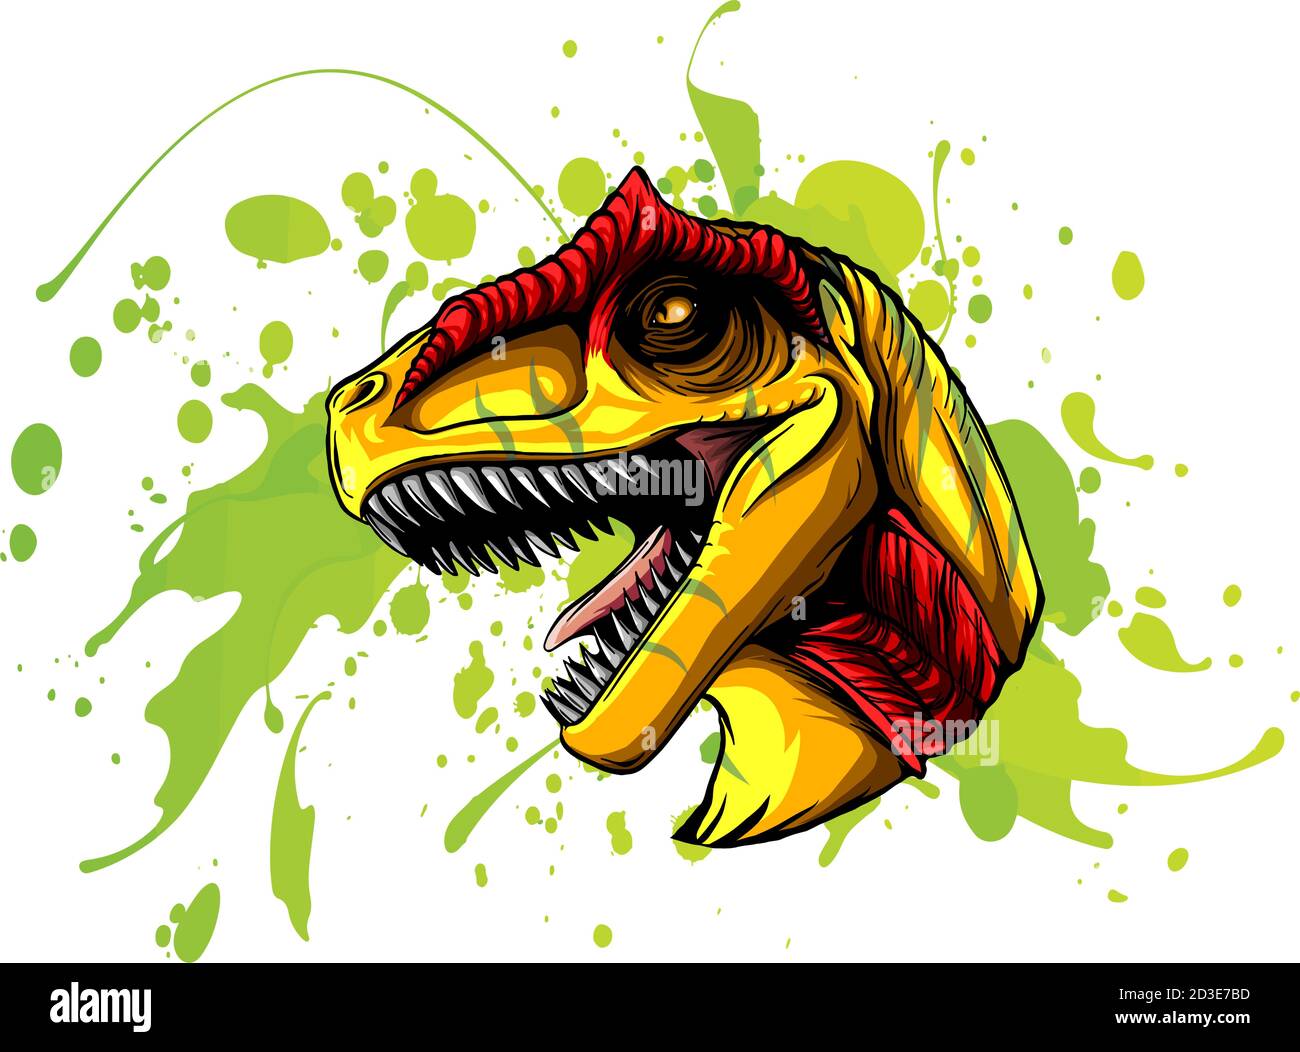 Dinosaur Pterodactyloidea Illustration Stock Illustration - Download Image  Now - Allosaurus, Ancient, Archaeology - iStock